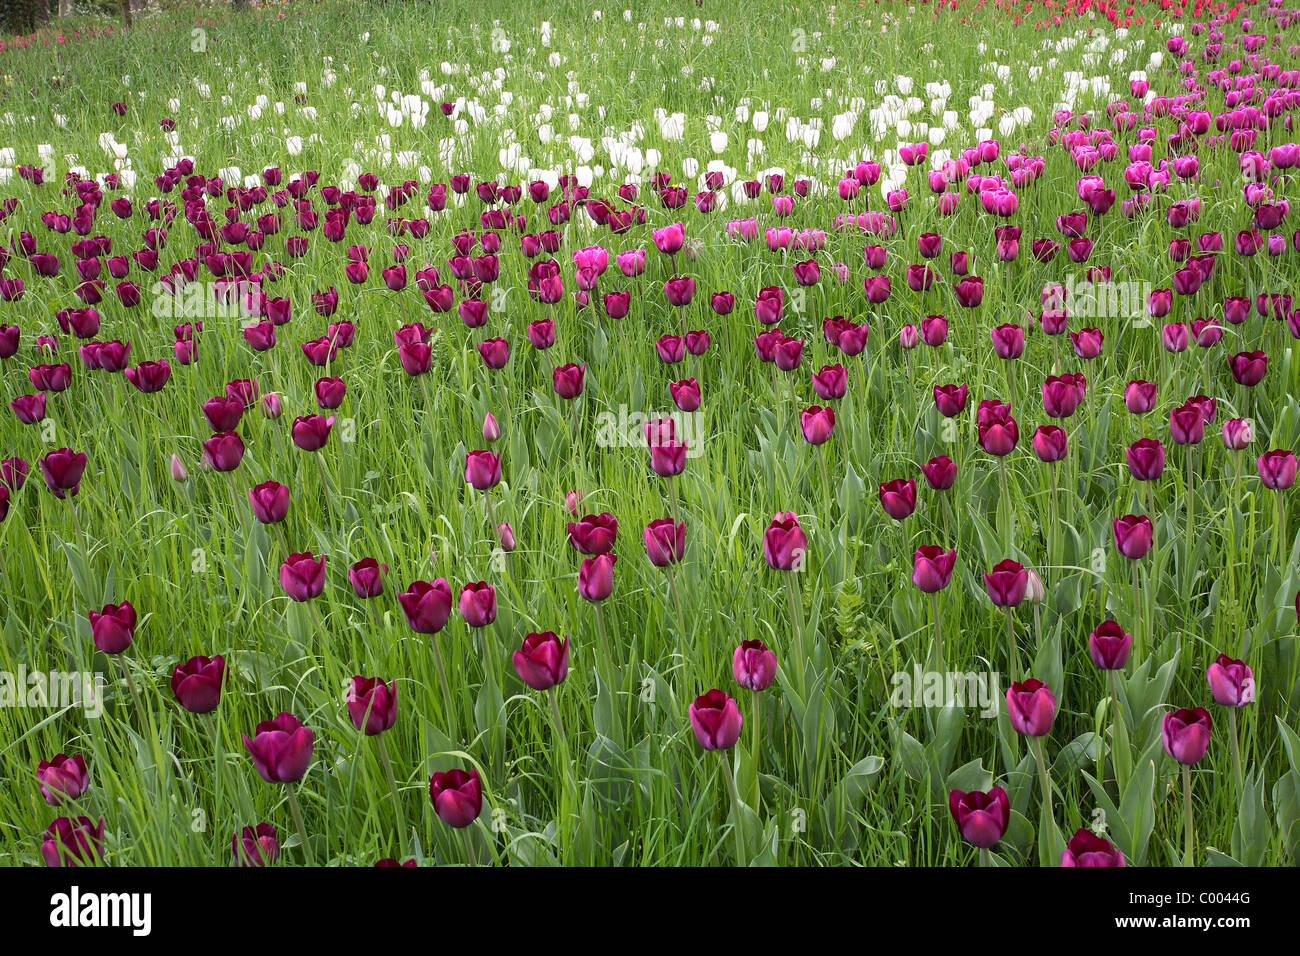 Tulpen, Tulipa-Hybriden, Feld, Tulipa, Tulips, field, Insel Mainau, Isle, Deutschland, Germany Stock Photo